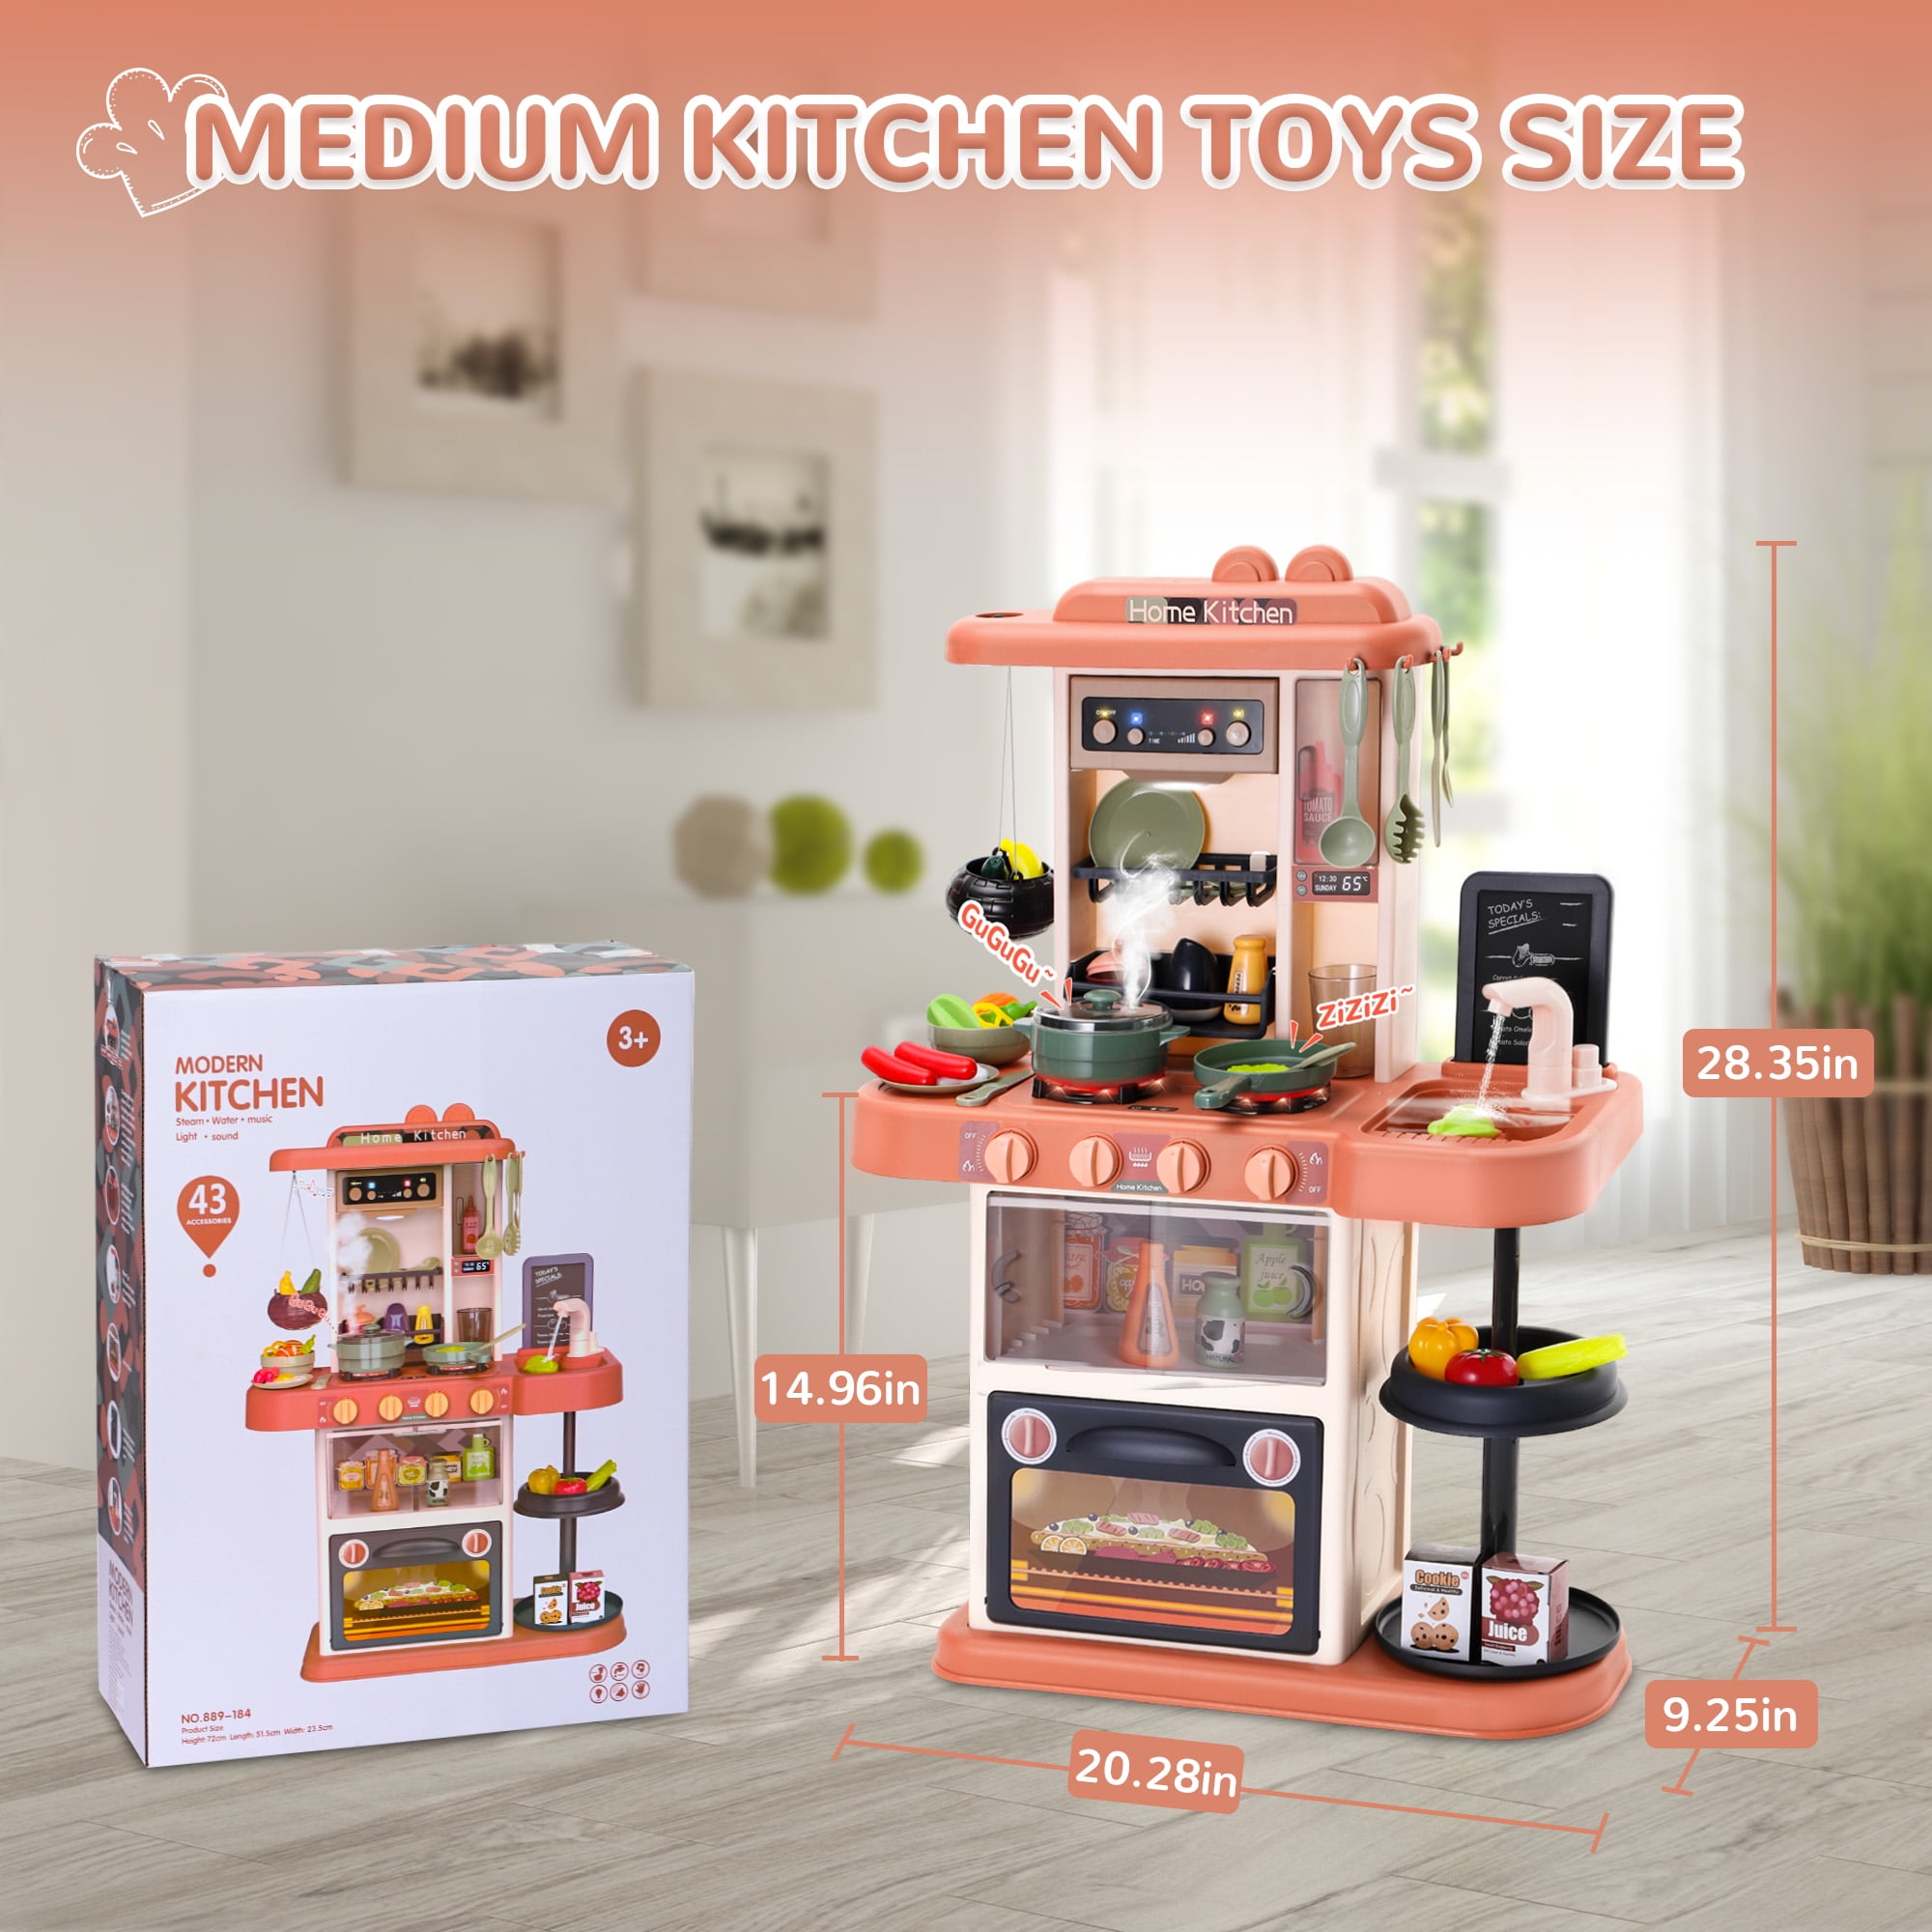 Wisairt Play Kitchen Set, 4pcs Toy Kitchen Appliance w/Oven Toaster Coffee Maker Juicer, Khaki, Size: 5.51 x 3.74 x 6.89, Orange